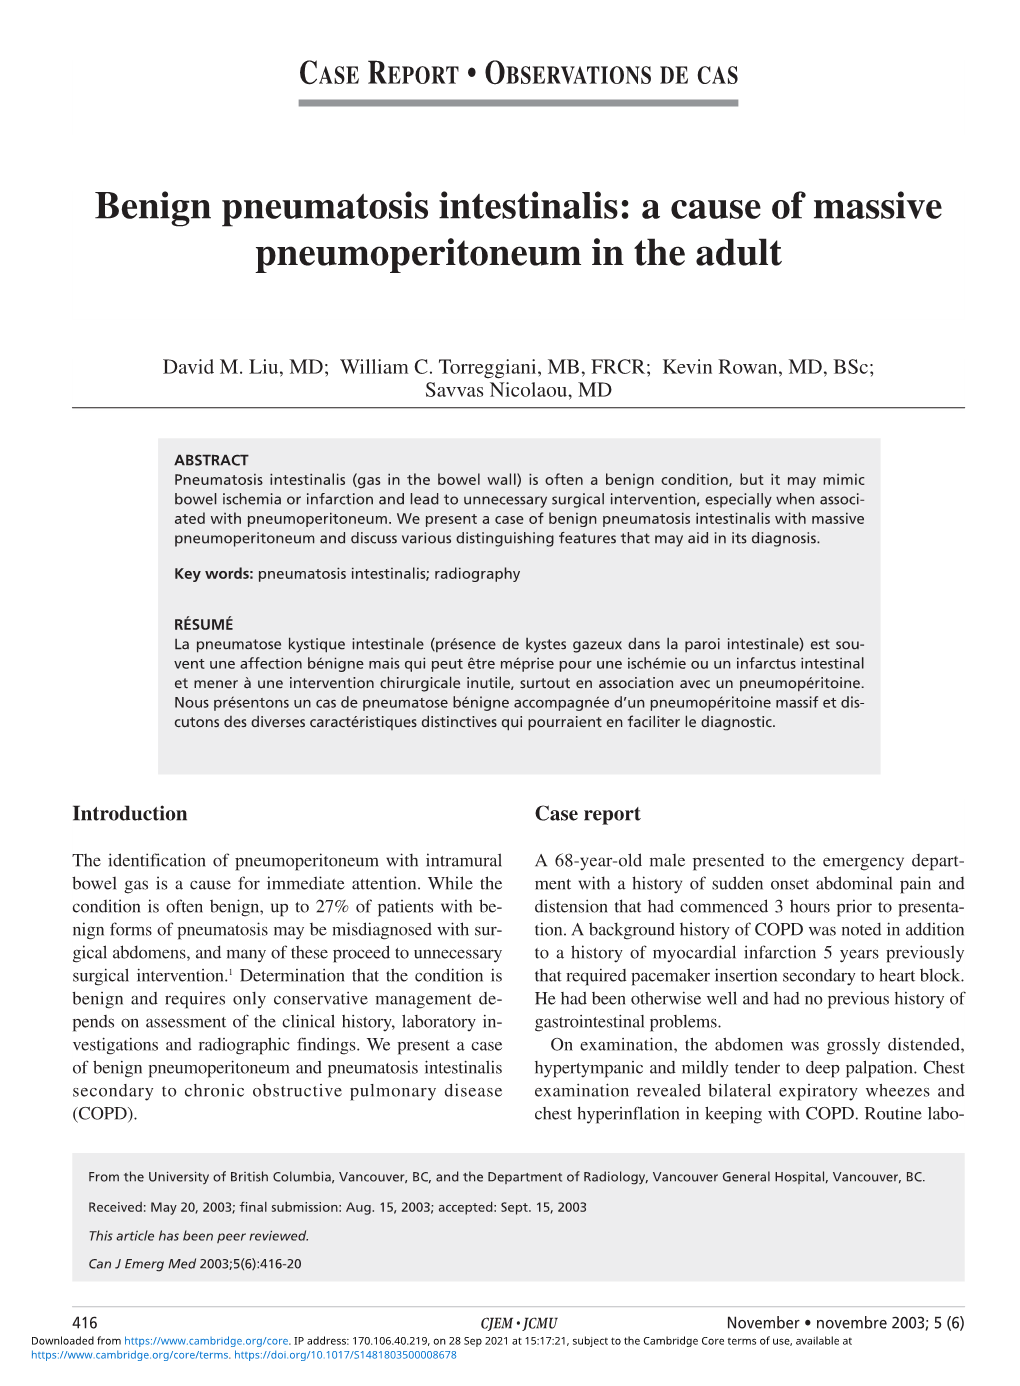 Benign Pneumatosis Intestinalis: a Cause of Massive Pneumoperitoneum in the Adult